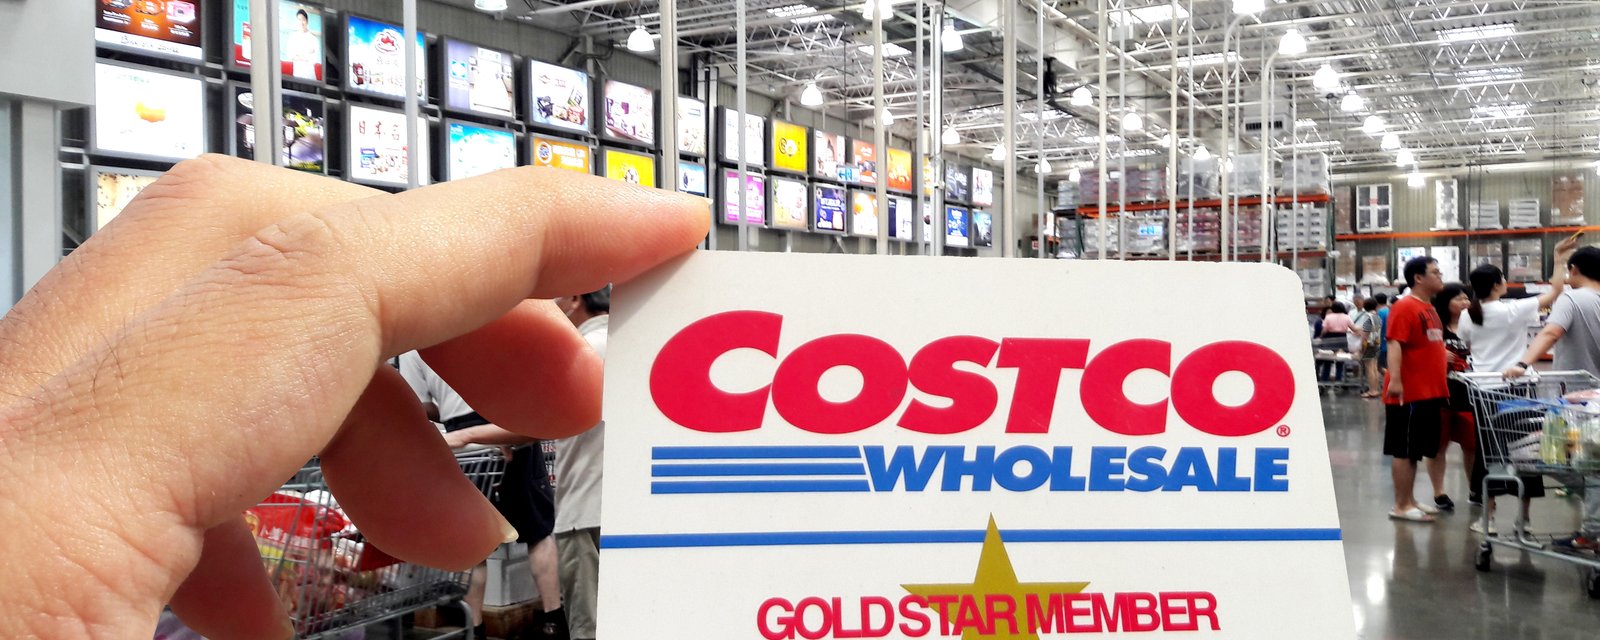 12 astuces faciles pour économiser chez Costco